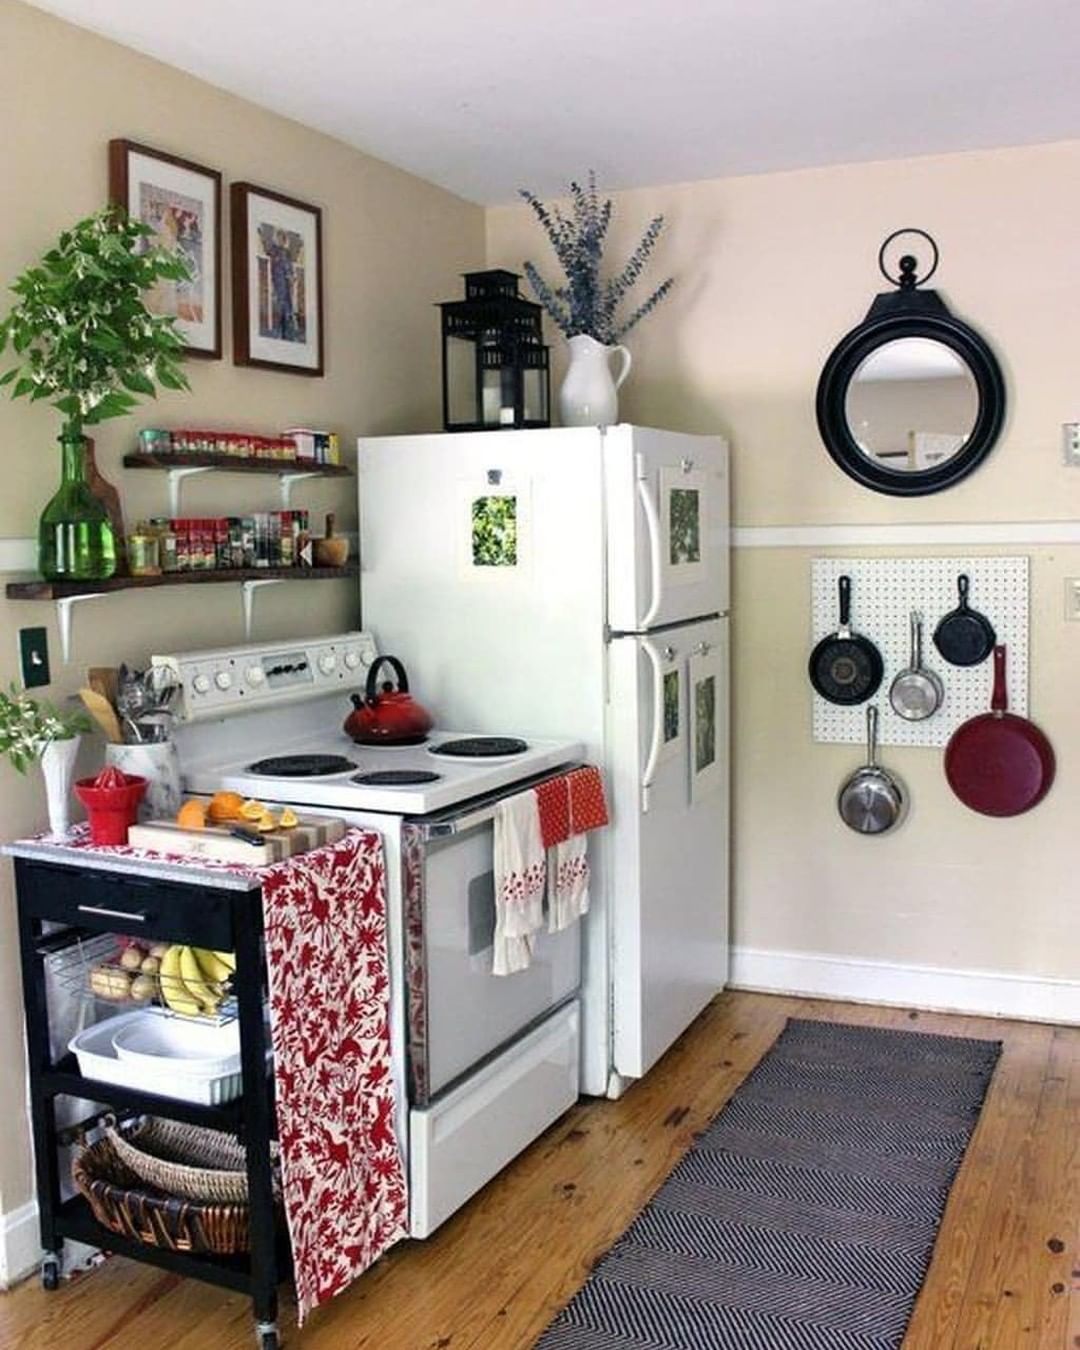 Ide Untuk Dapur  Minimalis  Modern Ukuran Kecil Agar Terlihat Rapi Rumah  Inspirasi Dan  Informasi 